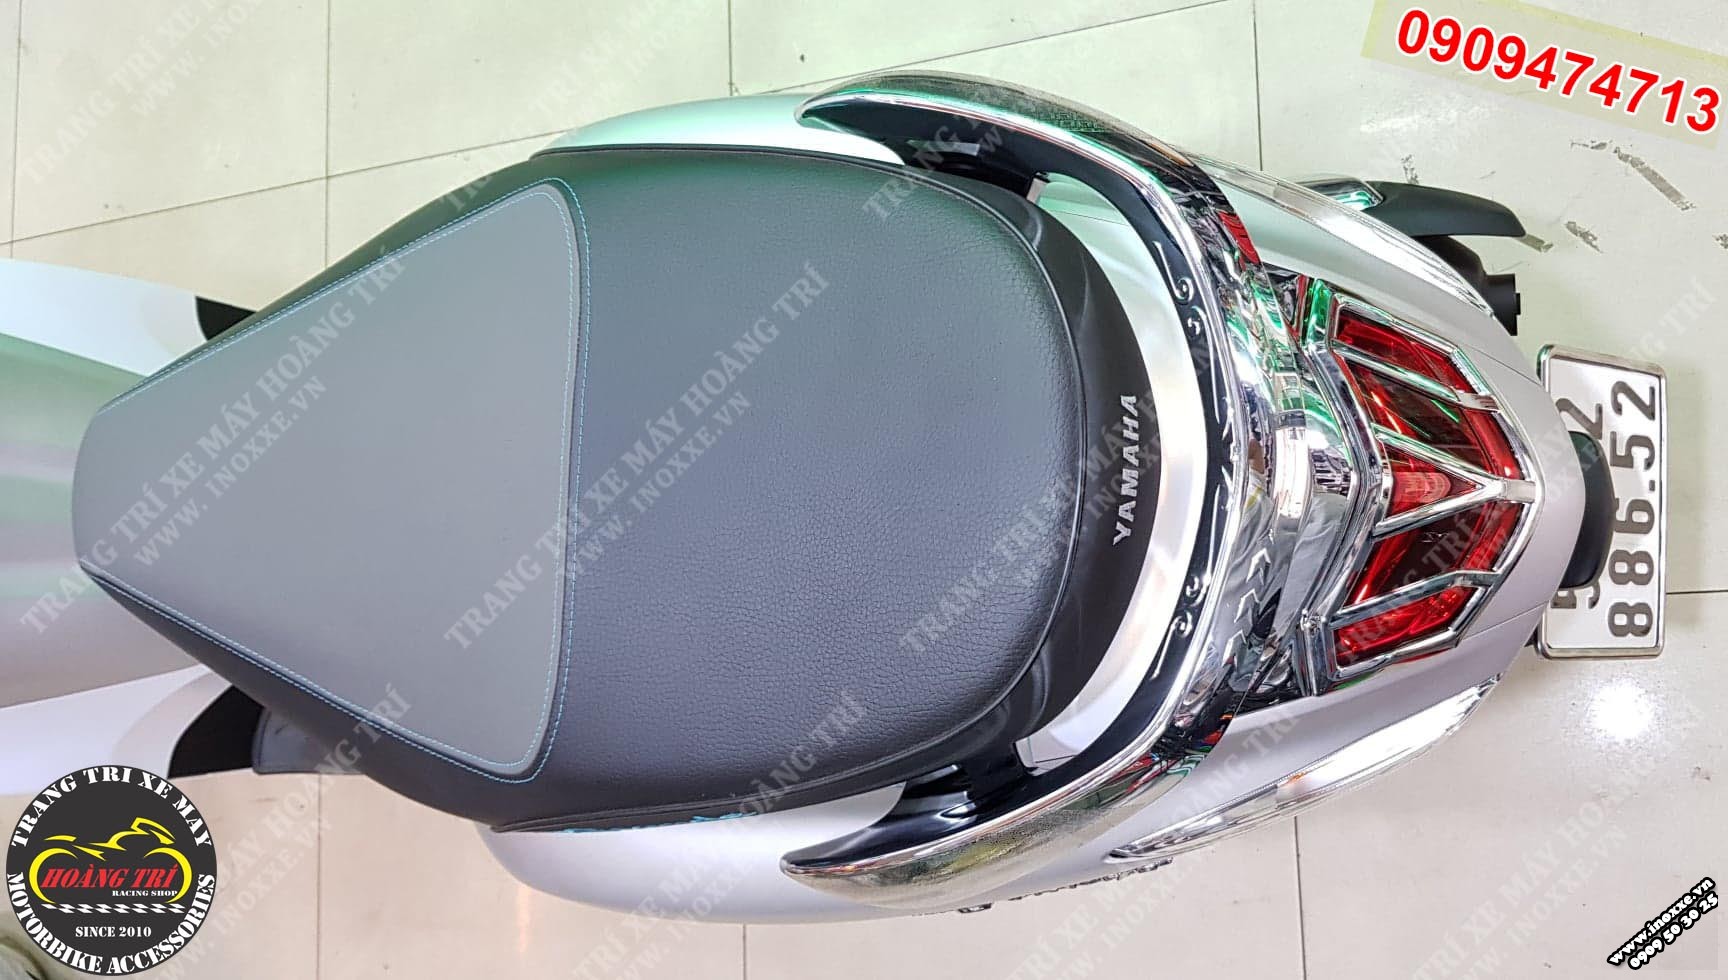 Bảo vệ phần cản sau của xe khỏi trầy xước với ốp cản sau Yamaha Grande 2019 mạ Crom